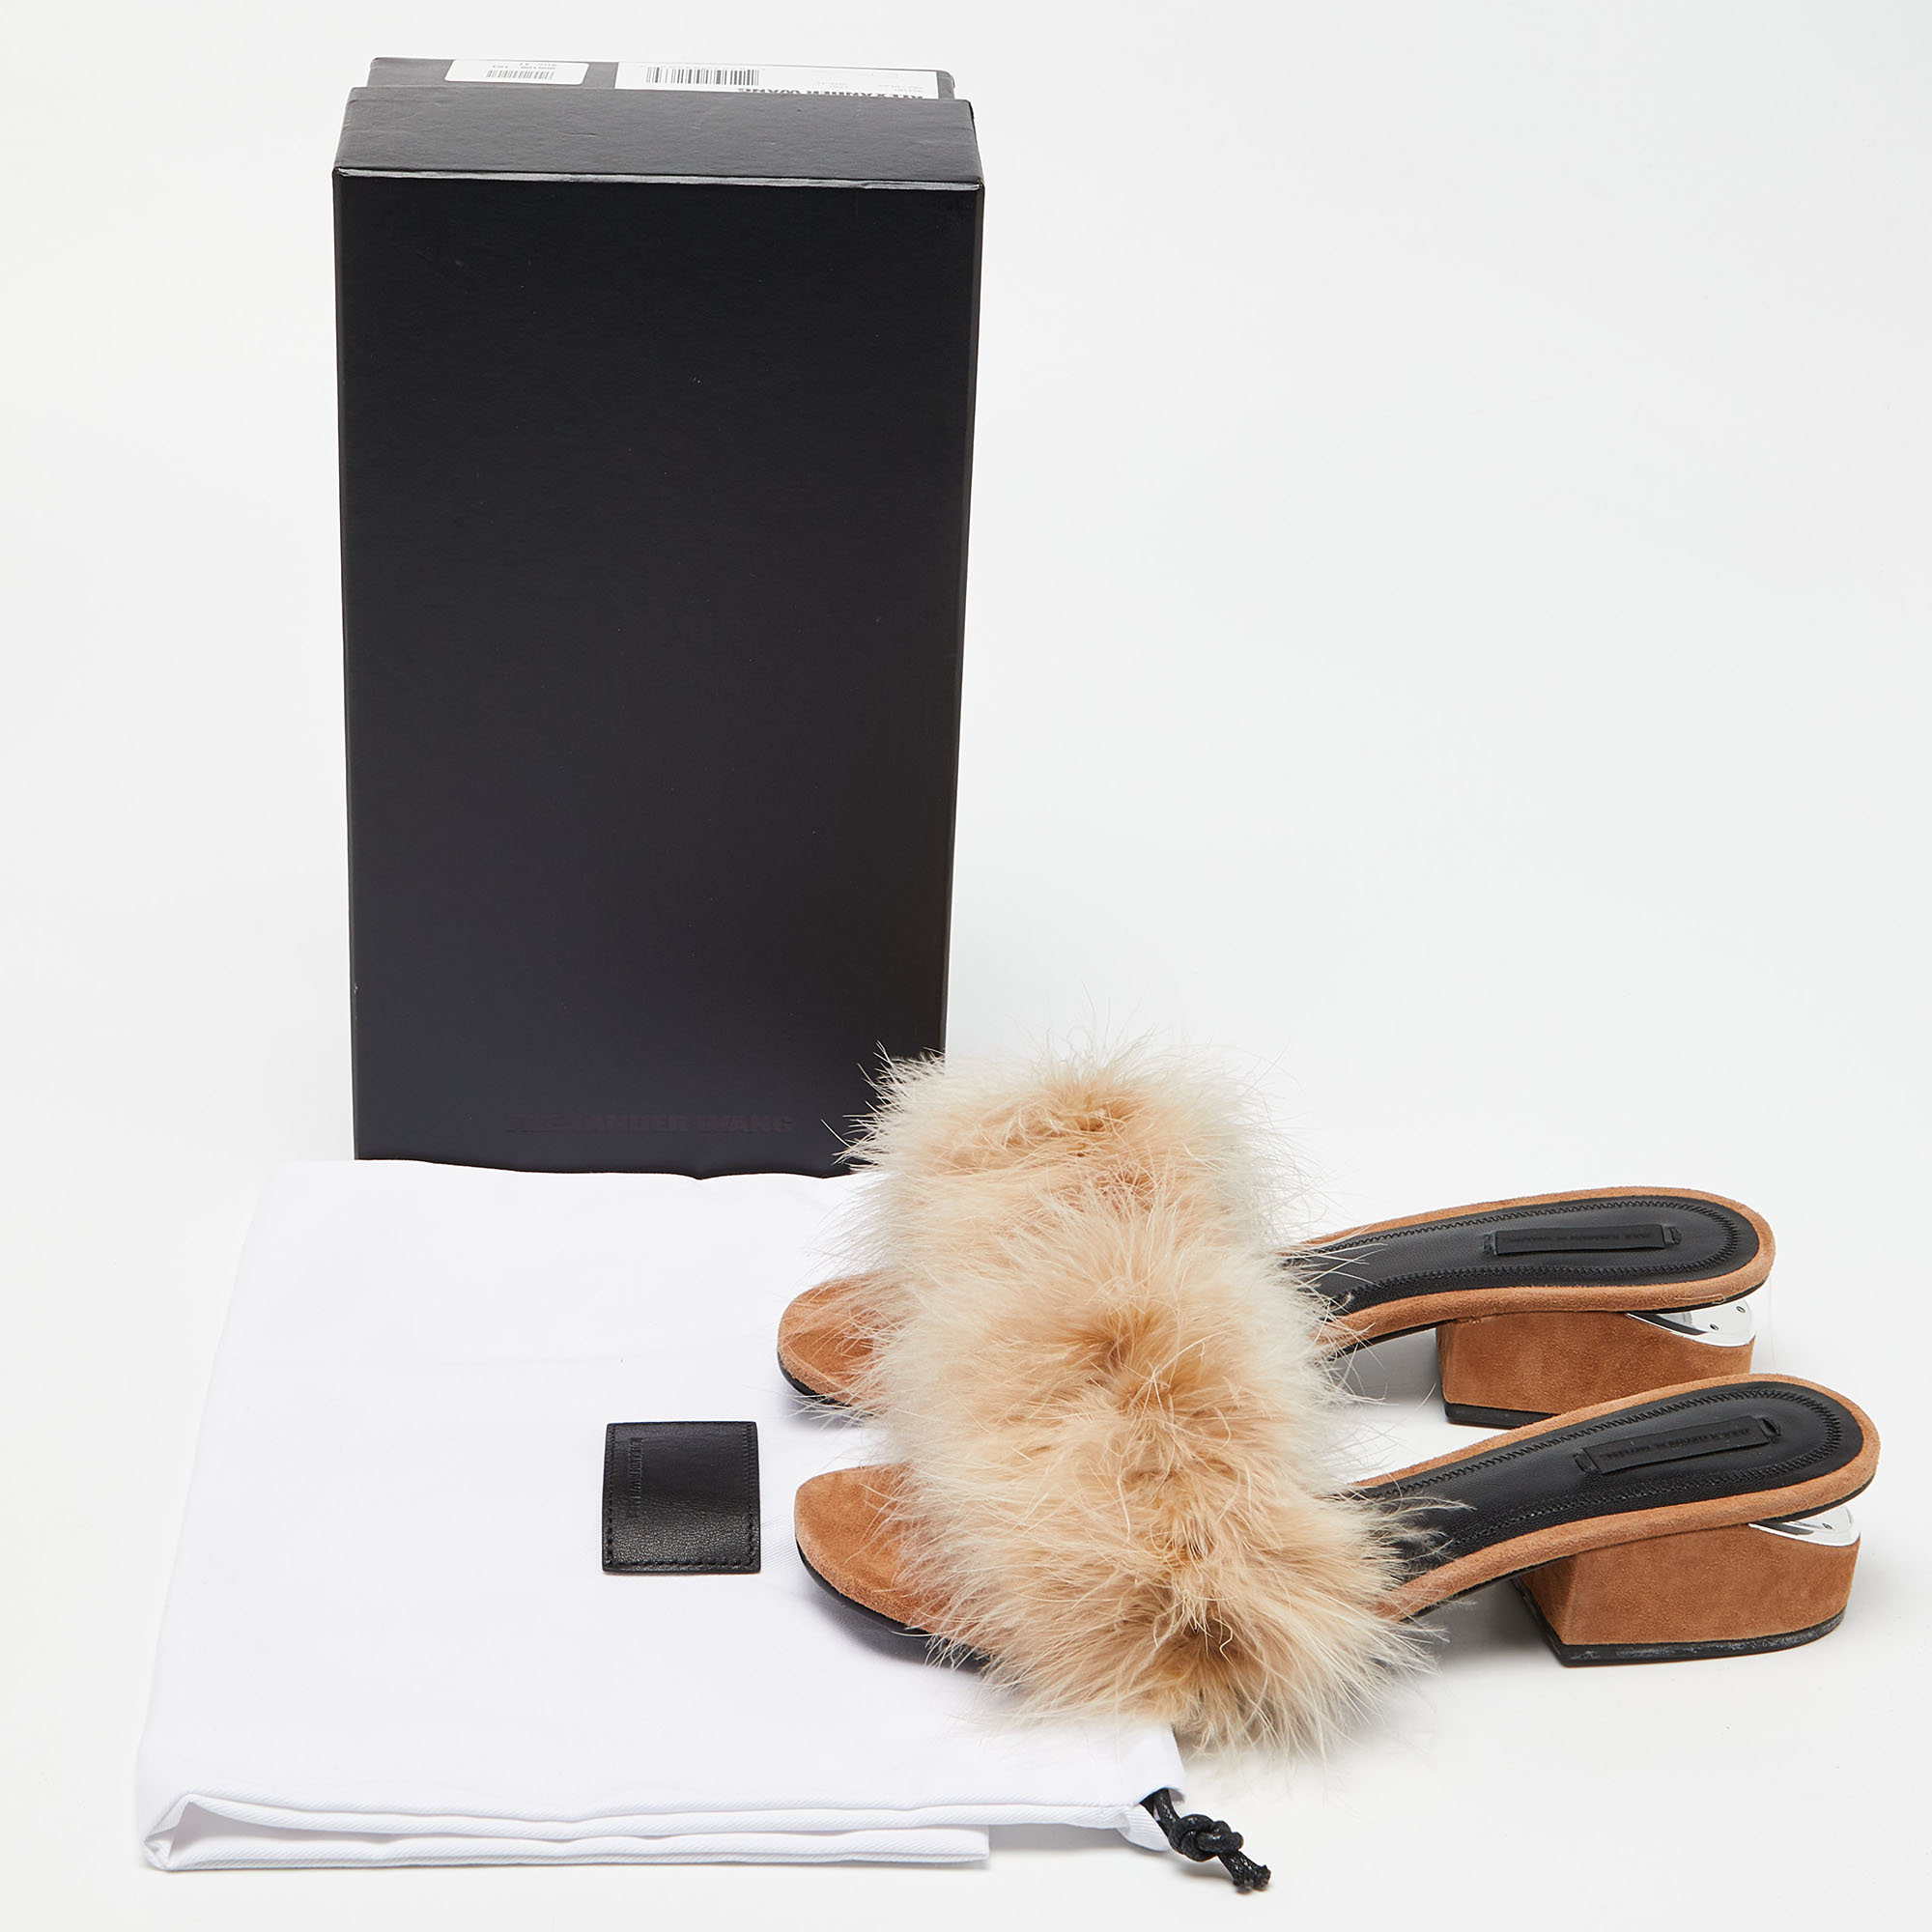 Alexander Wang Brown Fur Open Toe Block Heel Slide Sandals Size 41